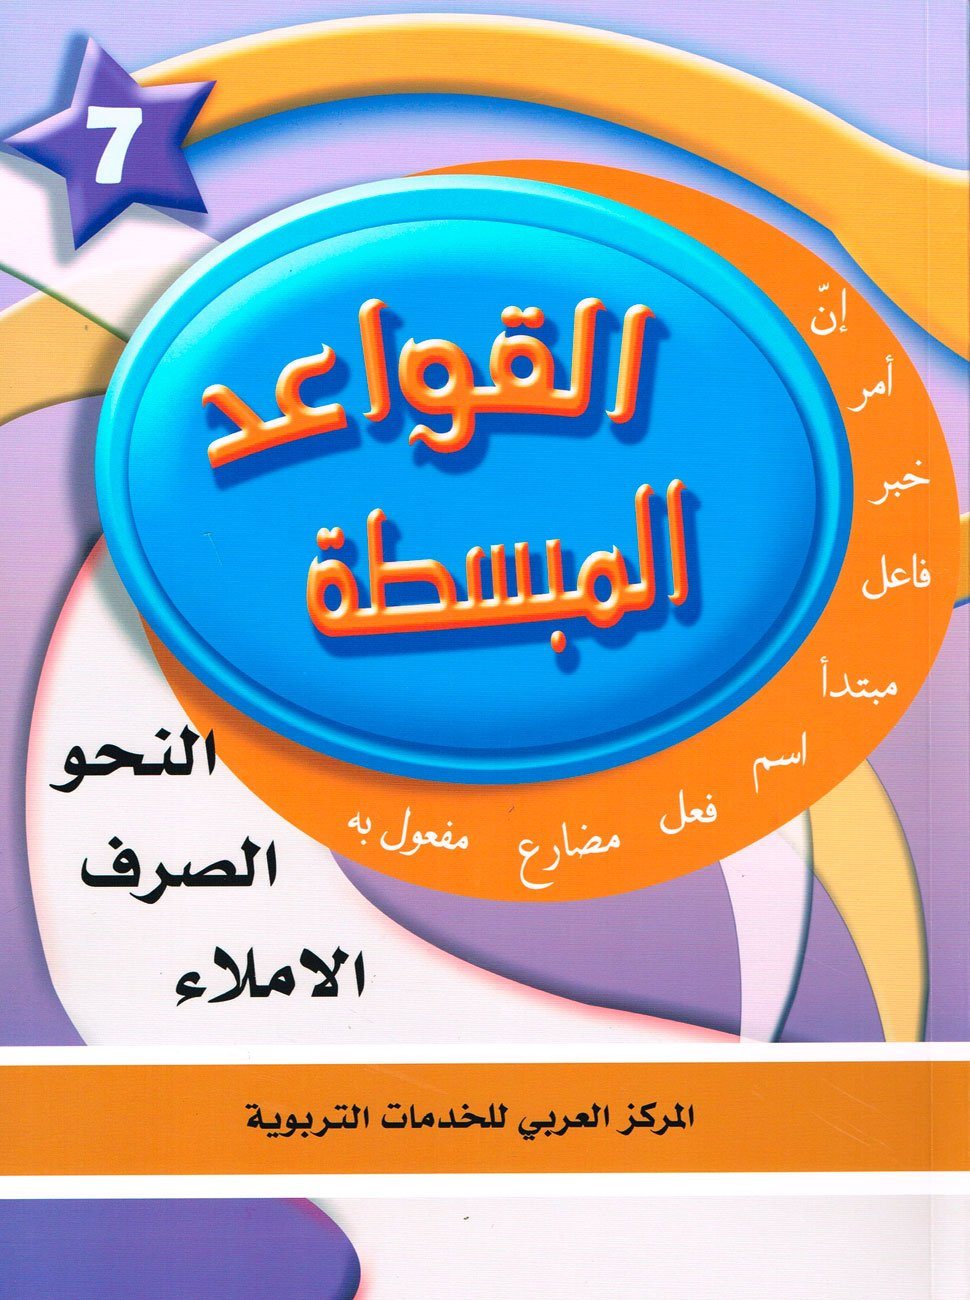 في حديقة اللغة العربية : المستوى السابع كتاب التلميذ + تمارين كتب أطفال المركز العربي للخدمات التربوية